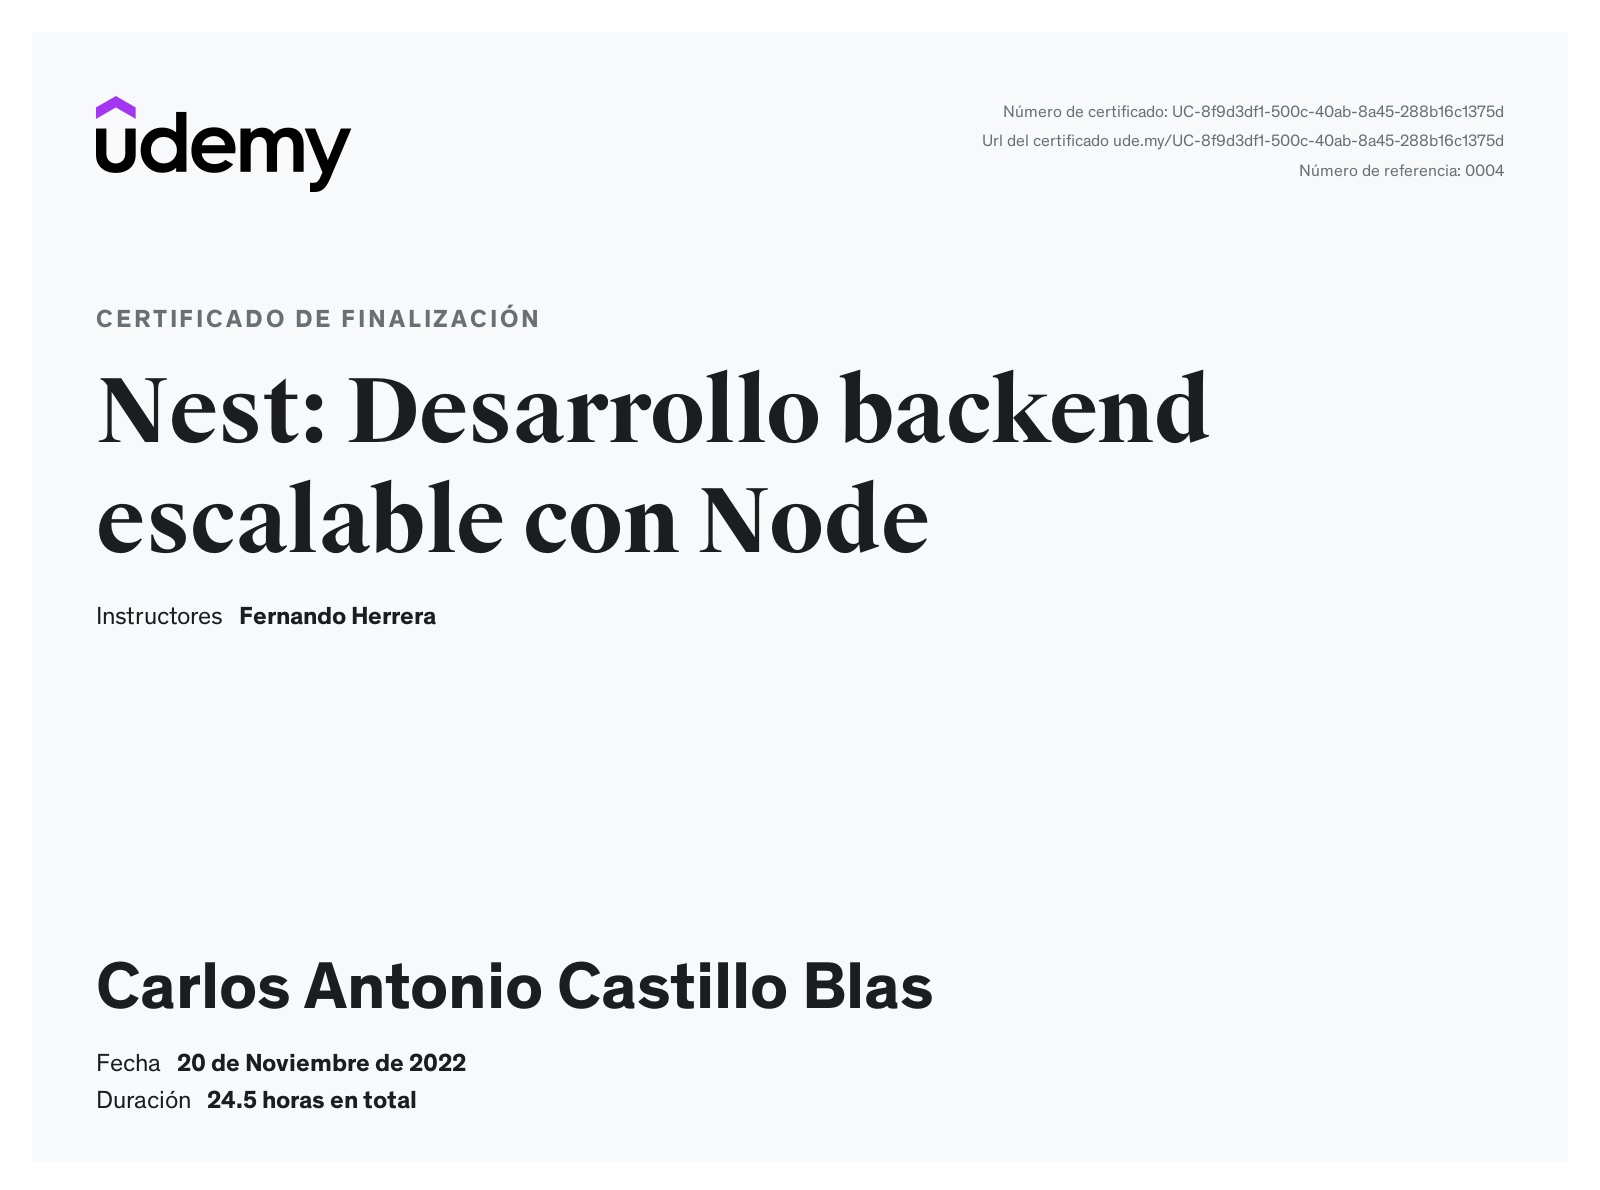 Nest: Desarrollo backend escalable con Node